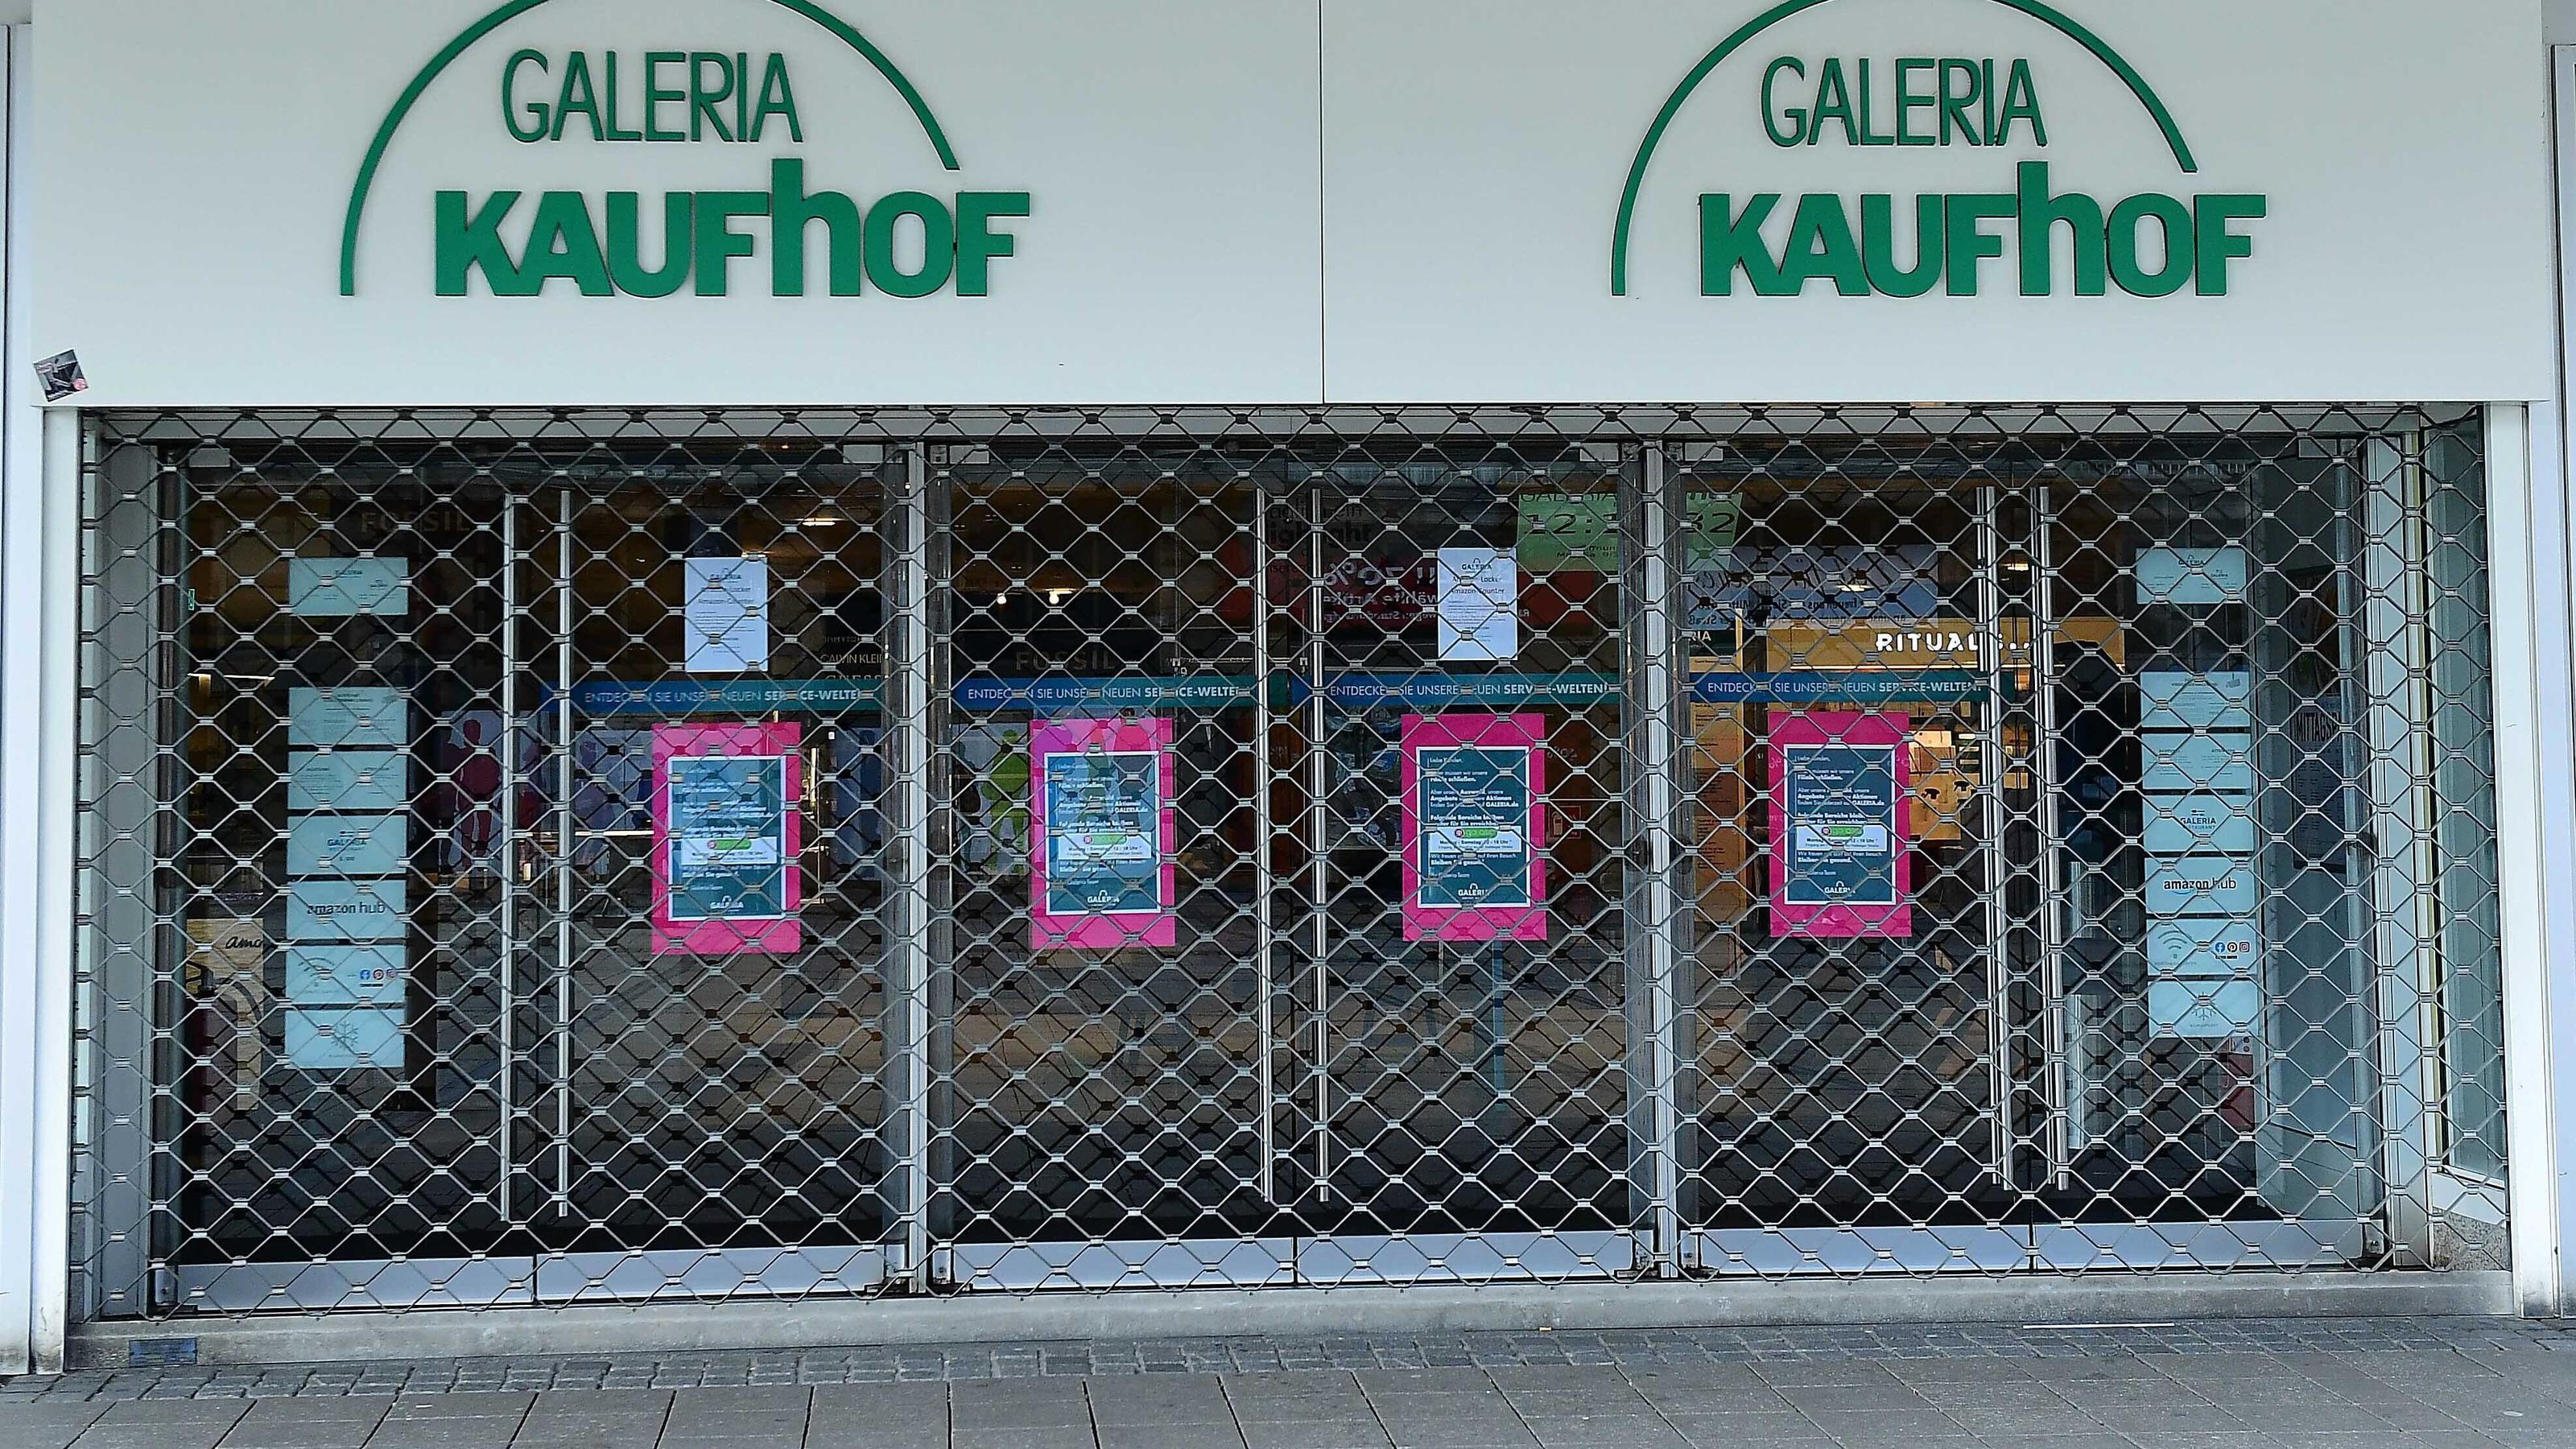  GALERIA Karstadt Kaufhof am 21.03.2020 in Essen Der Betriebsrat von Galeria Karstadt Kaufhof schlägt Alarm. Die Verordnungen zur Eindämmung der Coronavirus-Pandemie seien existenzbedrohend für Einzelhändler. In einem dramatischen Appell fordern die 